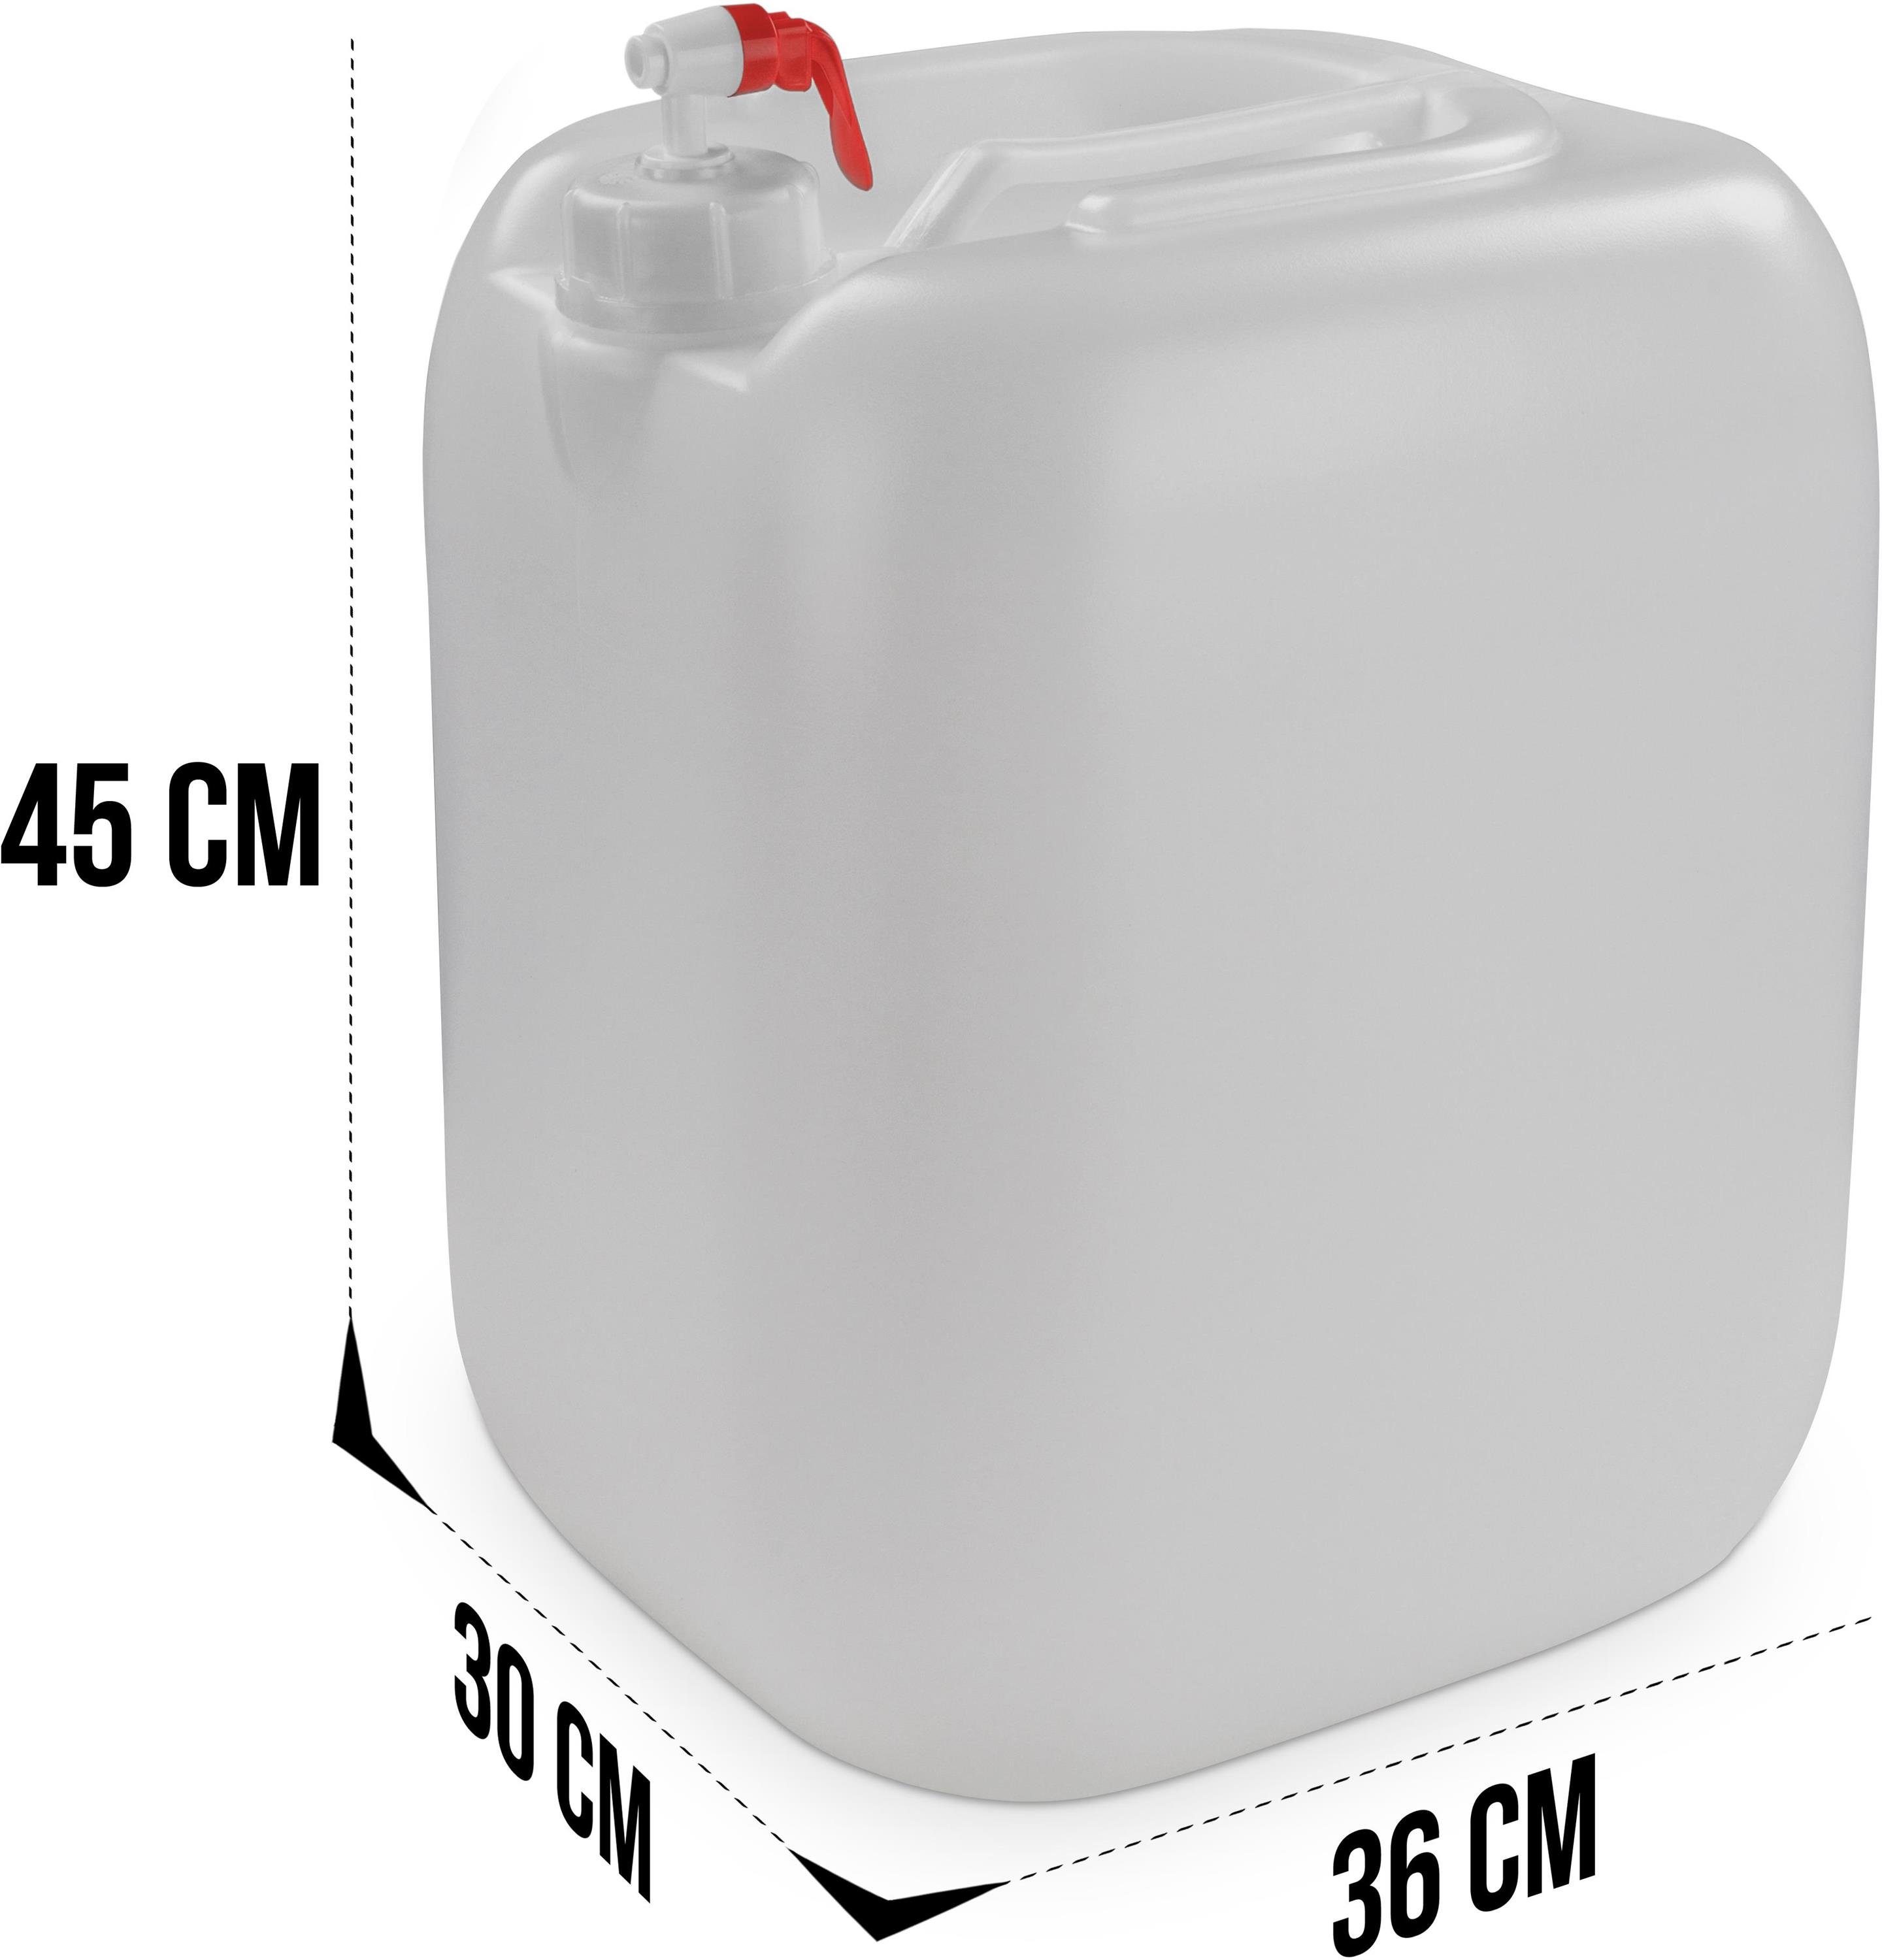 Kanister (1 mit Liter Wasserbehälter Trinkwasserkanister Lebensmittelecht Outdoorkanister normani Carry Hahn St), Wasserkanister Campingkanister 30